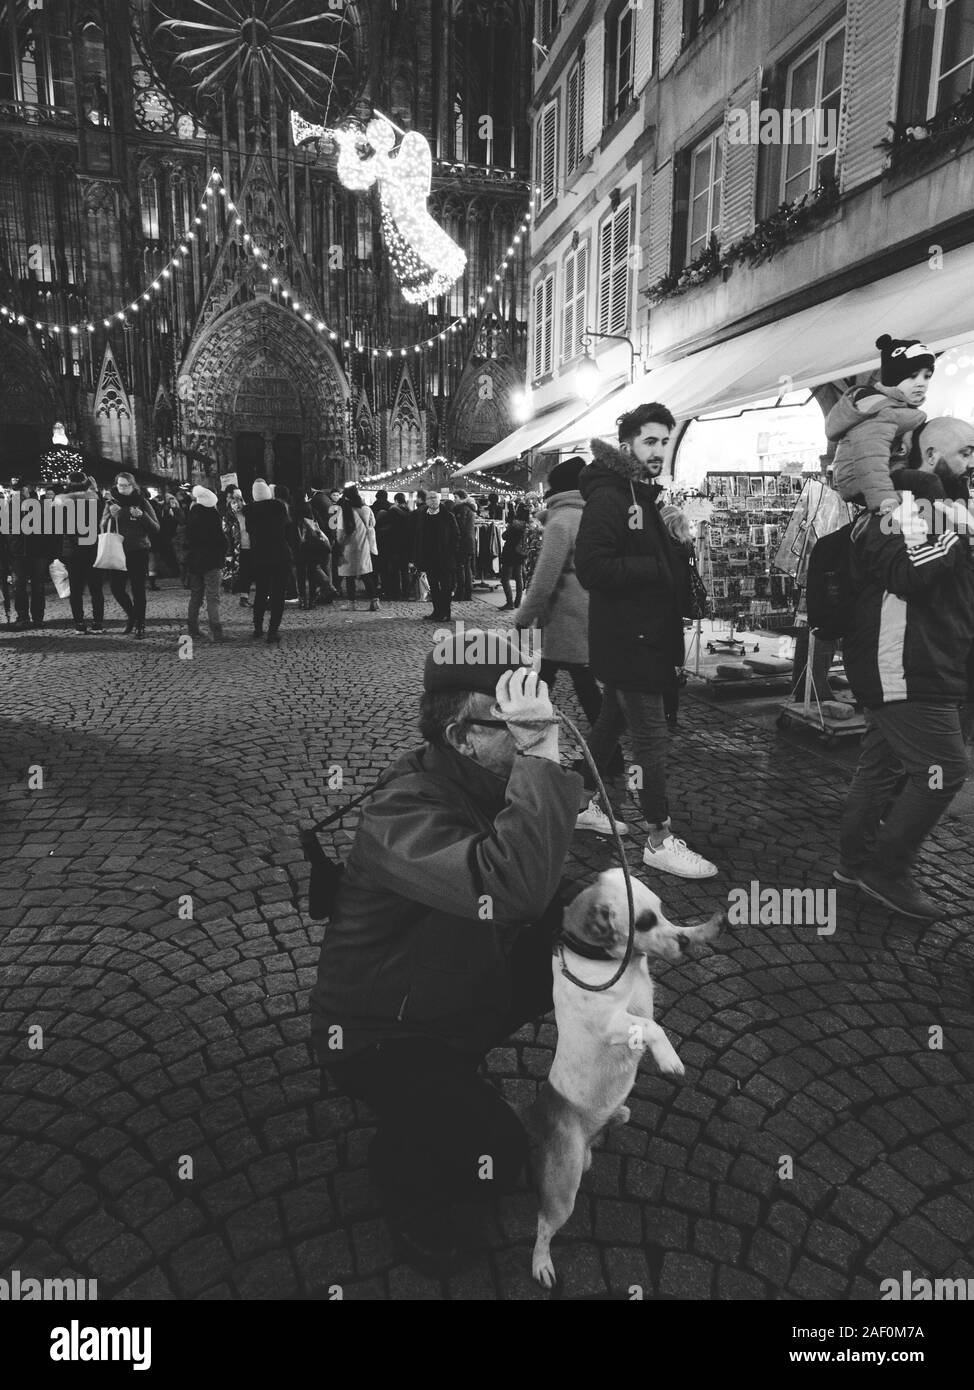 Strasburgo, Francia - Dic 24, 2018: immagine in bianco e nero di un uomo con un simpatico cane che posano per una foto davanti alla Cattedrale di Notre Dame de Strasbourg catherdral Mercatino di Natale Foto Stock